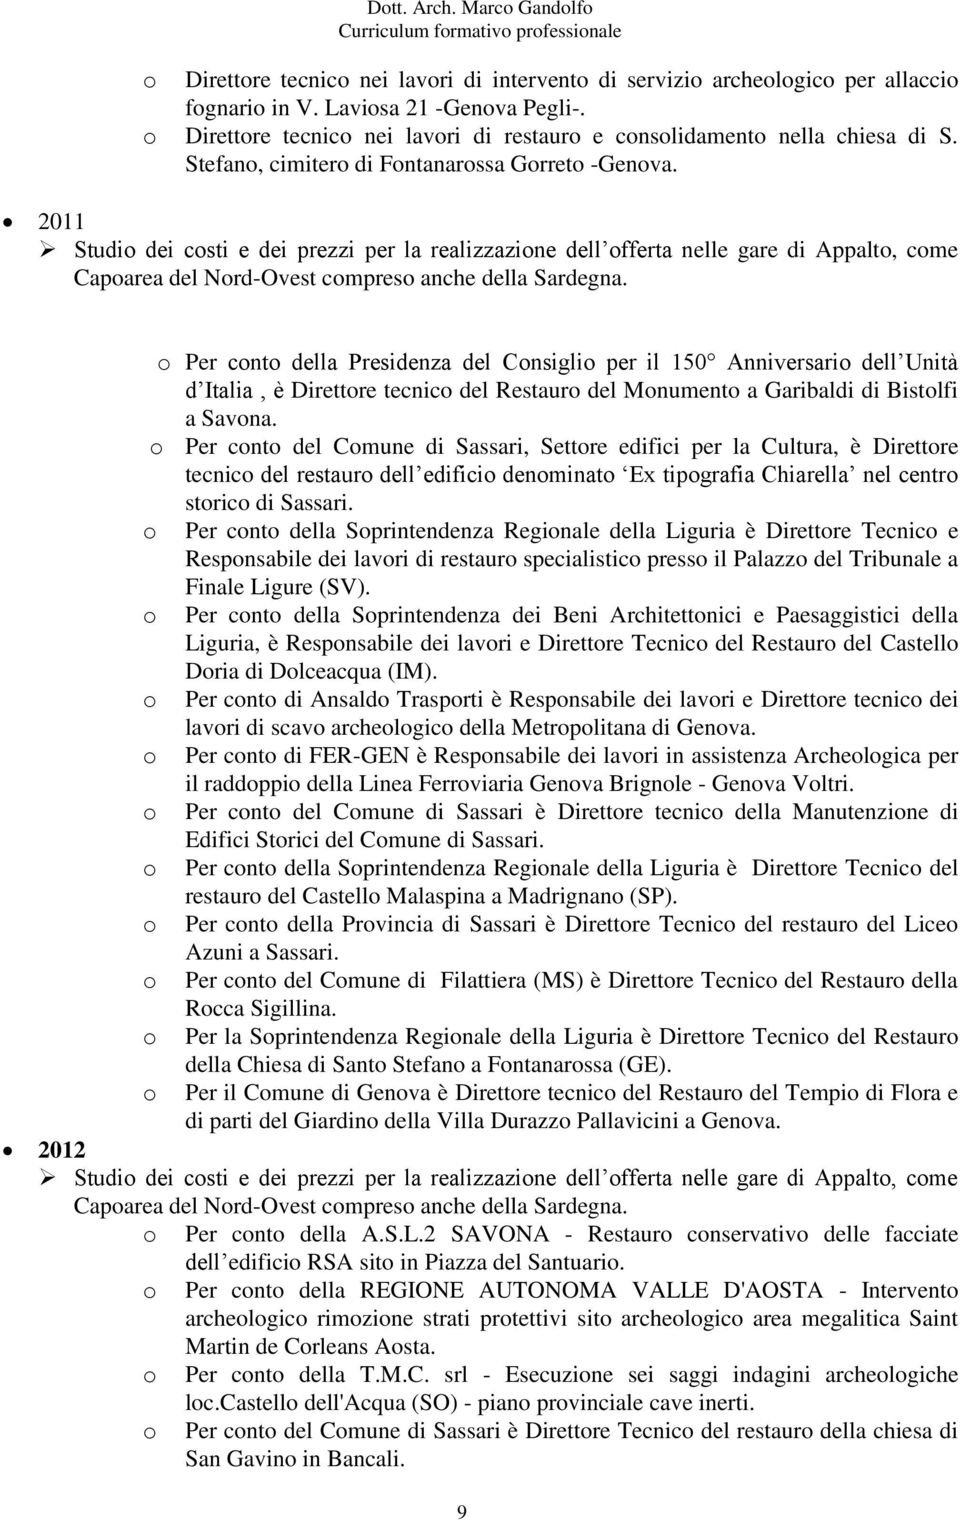 2011 Studi dei csti e dei prezzi per la realizzazine dell fferta nelle gare di Appalt, cme Caparea del Nrd-Ovest cmpres anche della Sardegna.